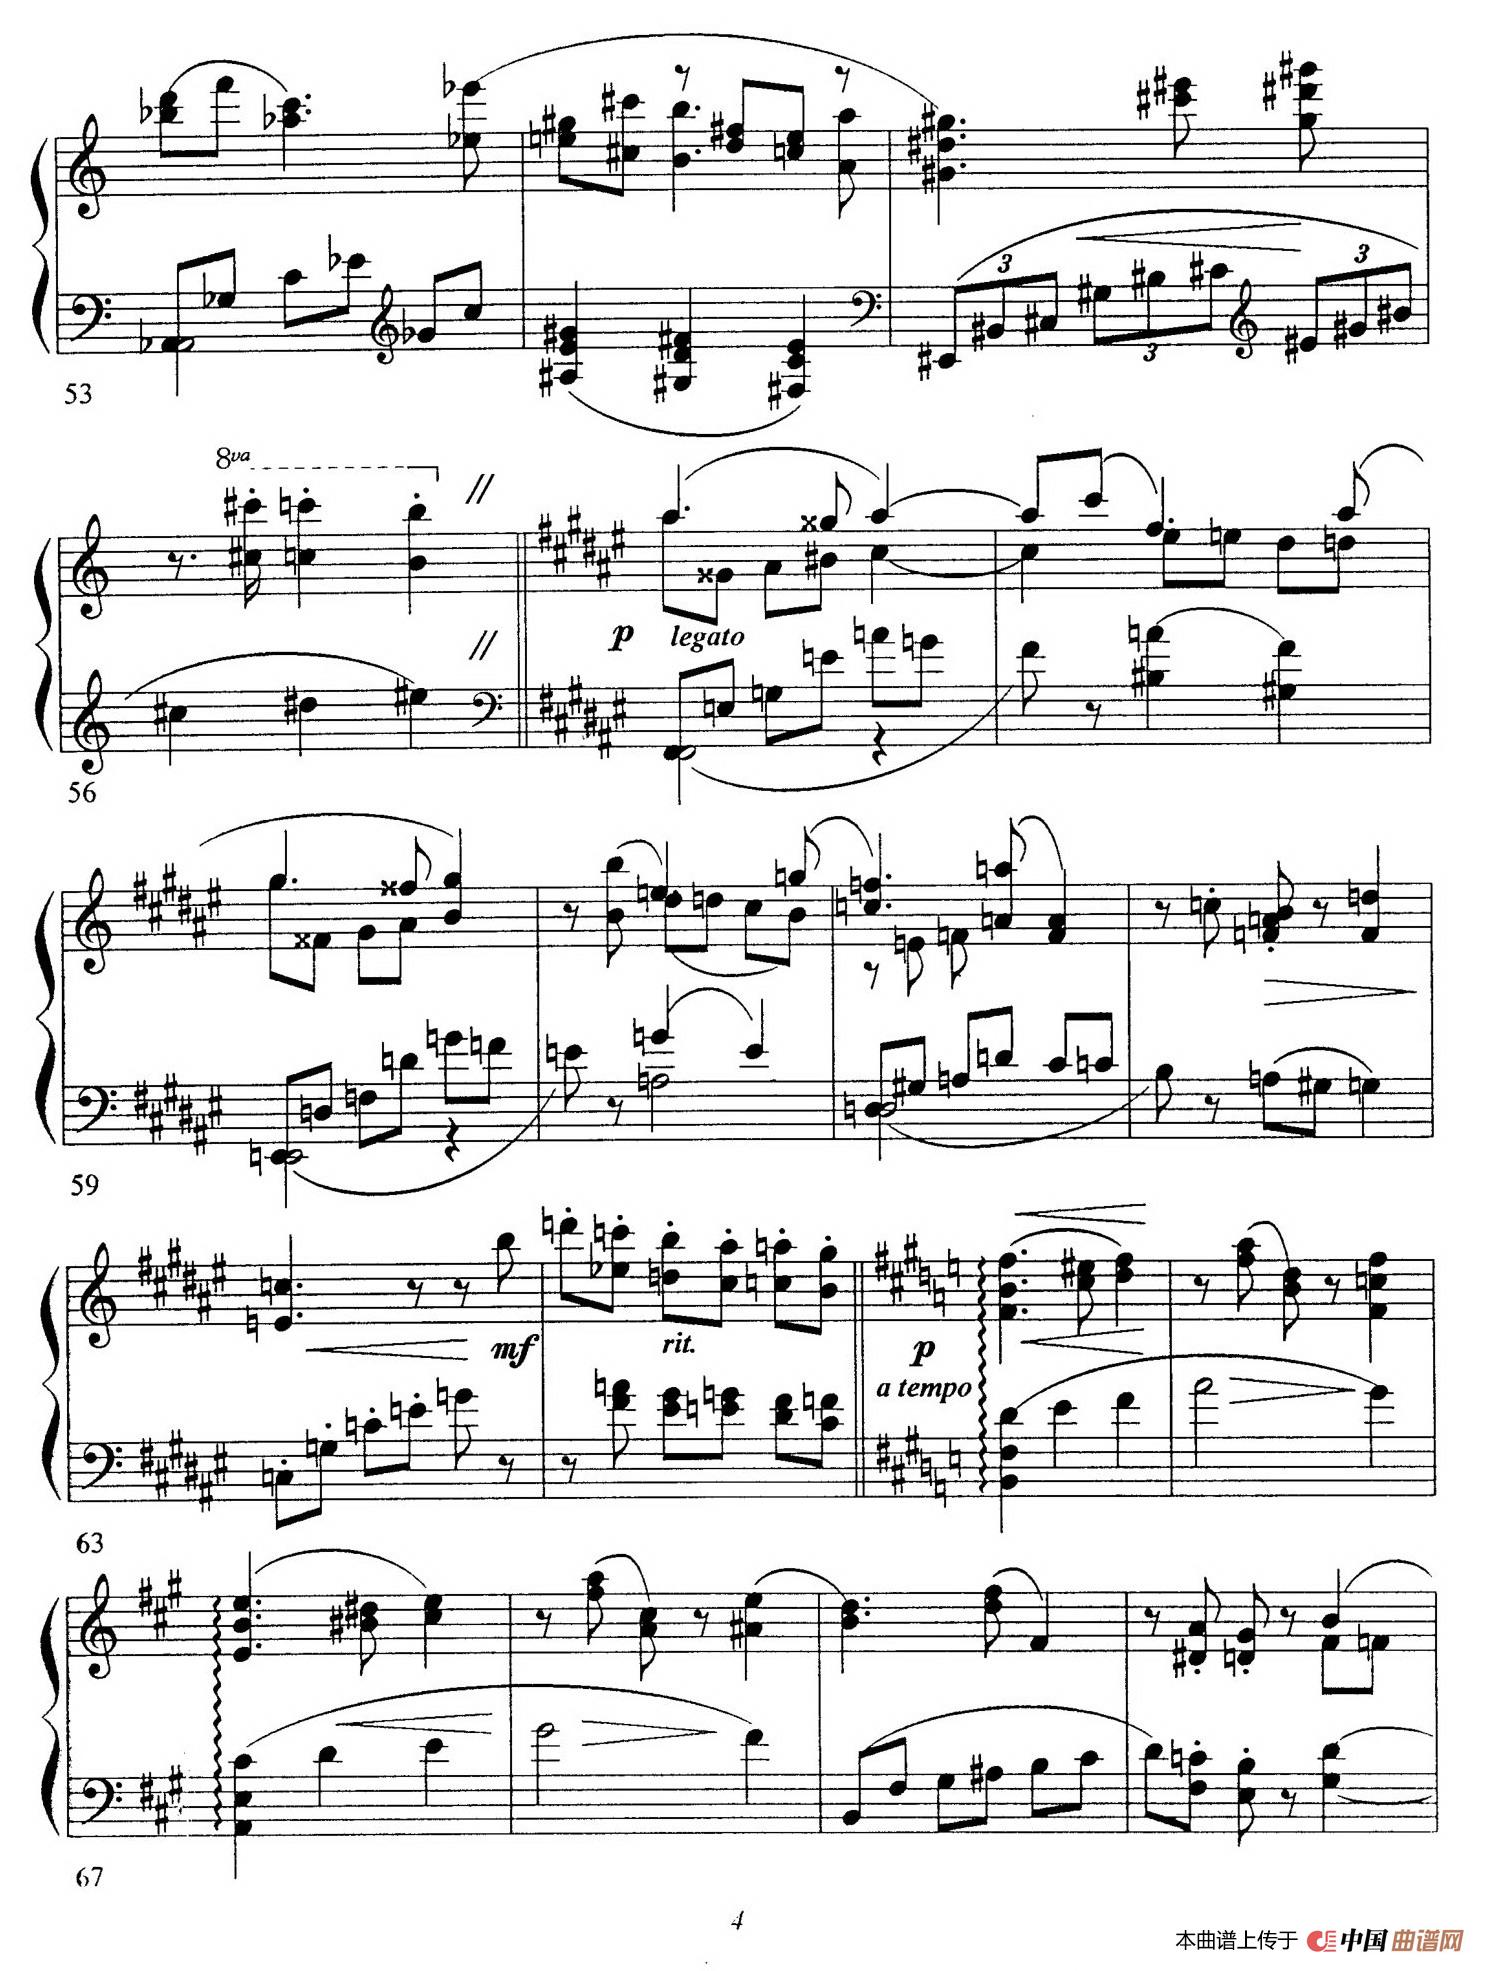 《Schon Rosmarin》钢琴曲谱图分享